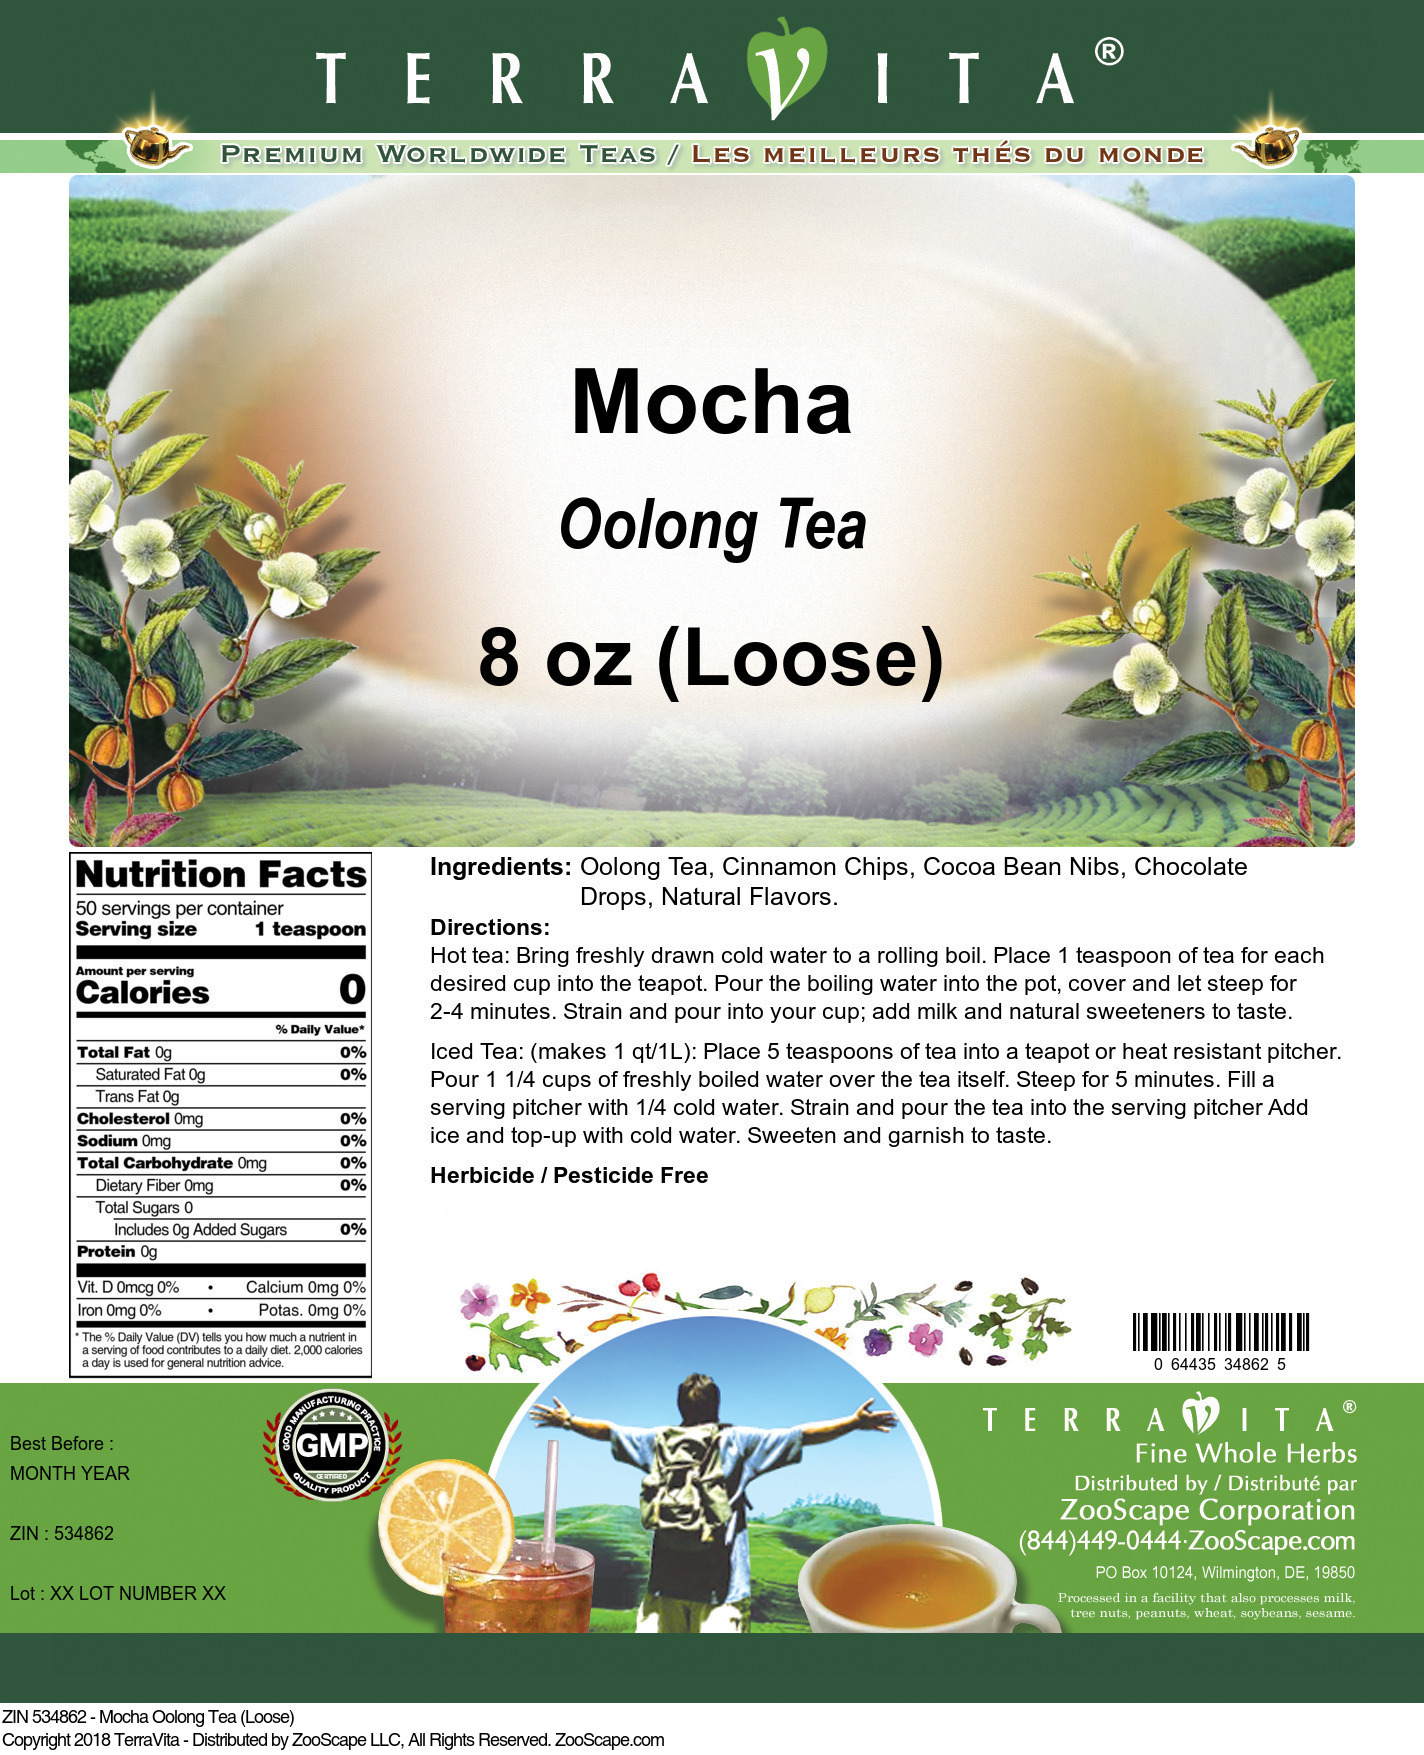 Mocha Oolong Tea (Loose) - Label